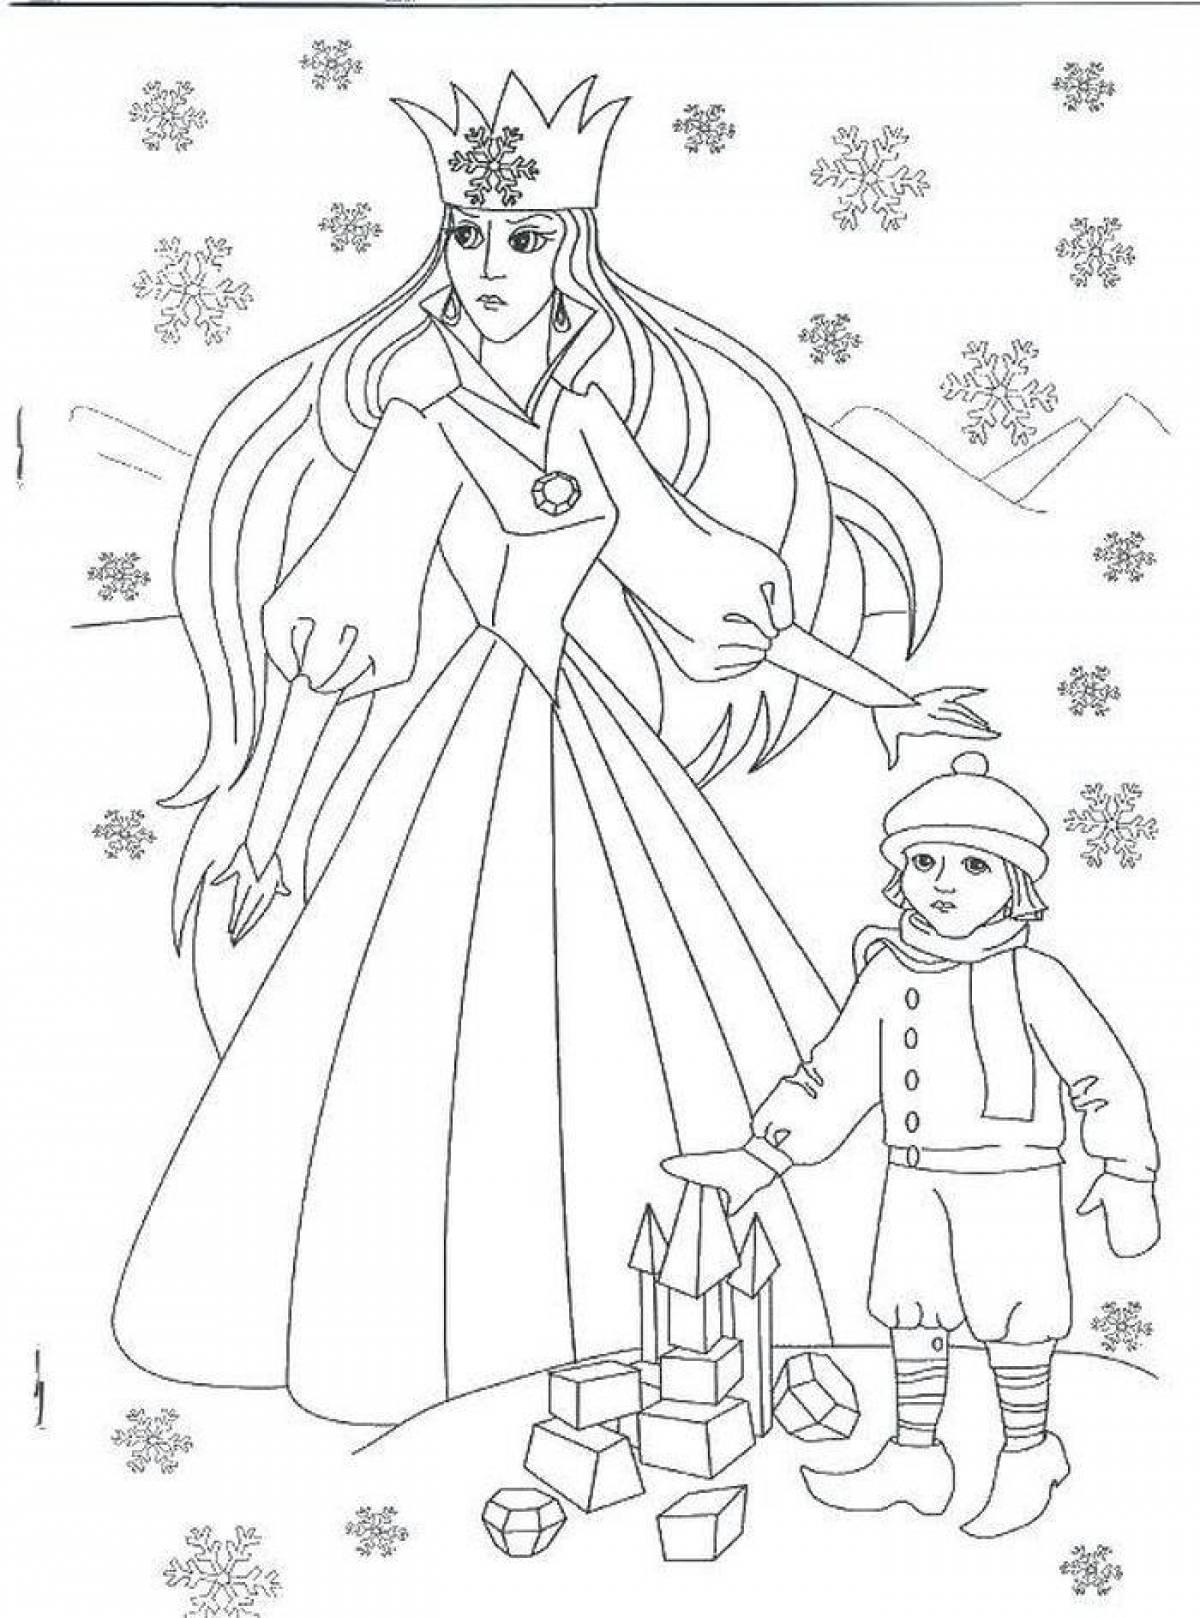 Иллюстрация к снежной королеве 5 класс. Раскраска снежной королевы из сказки Снежная Королева. Снежная Королева Андерсен раскраска. Снежная Королева рисунок карандашом. Раскраска Королева.